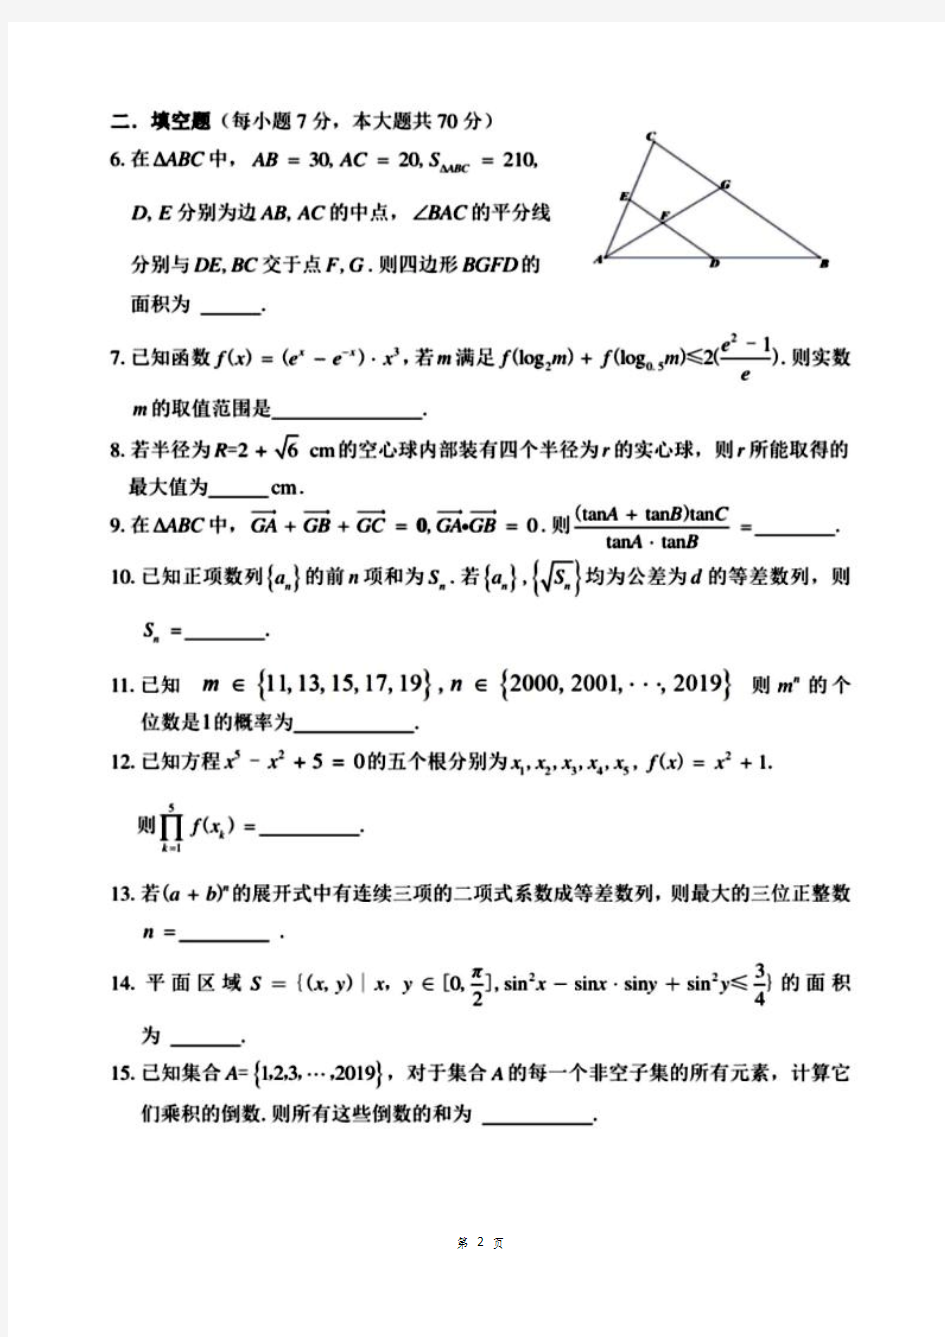 2019贵州高中数学竞赛预赛试题含详细解析答案